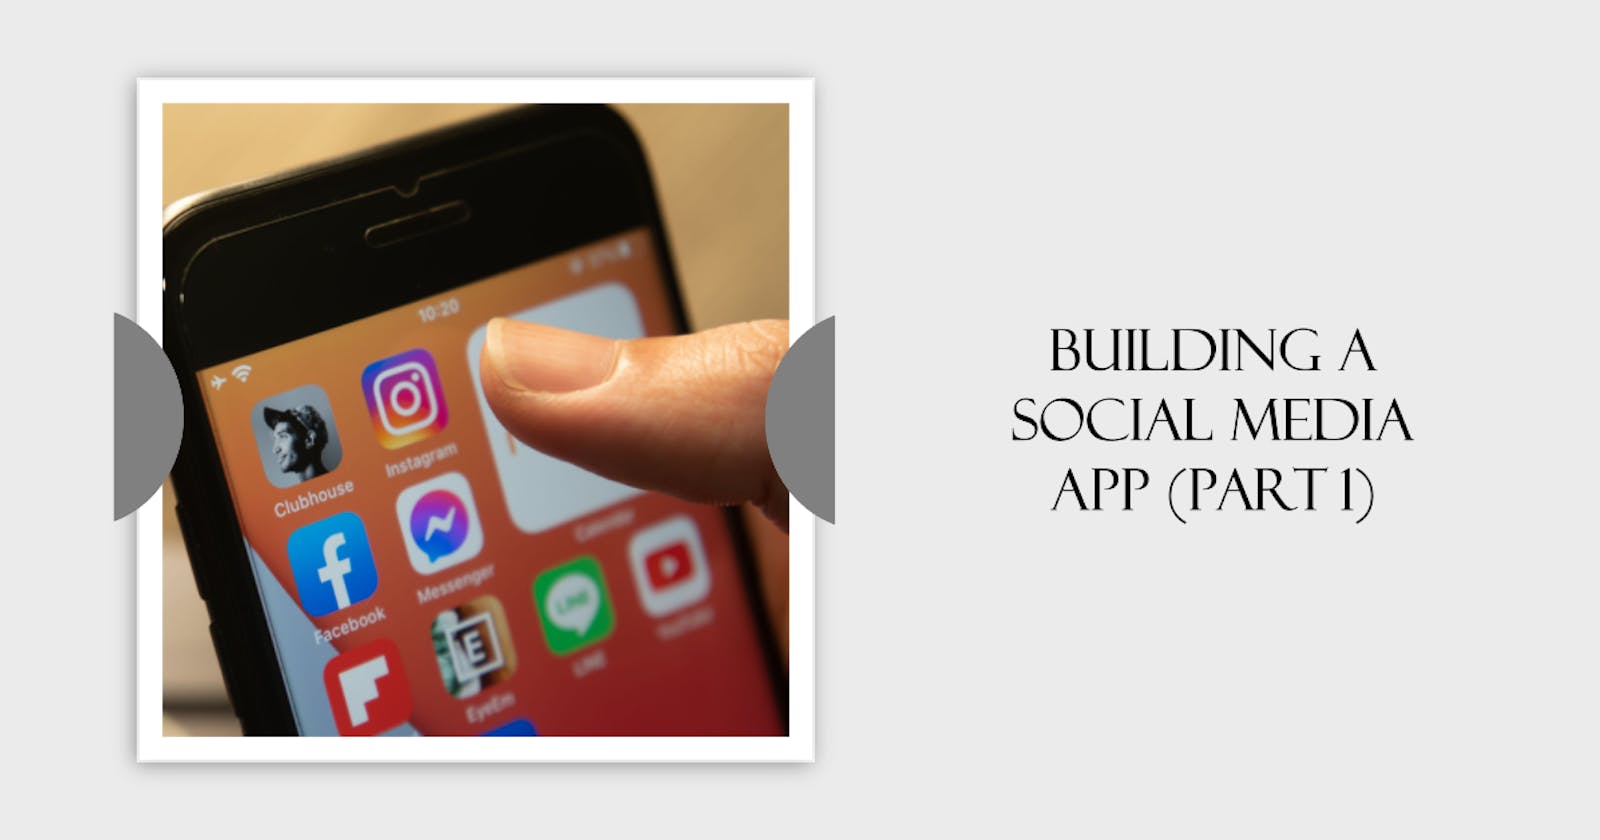 Building a Social Media App (Part 1)